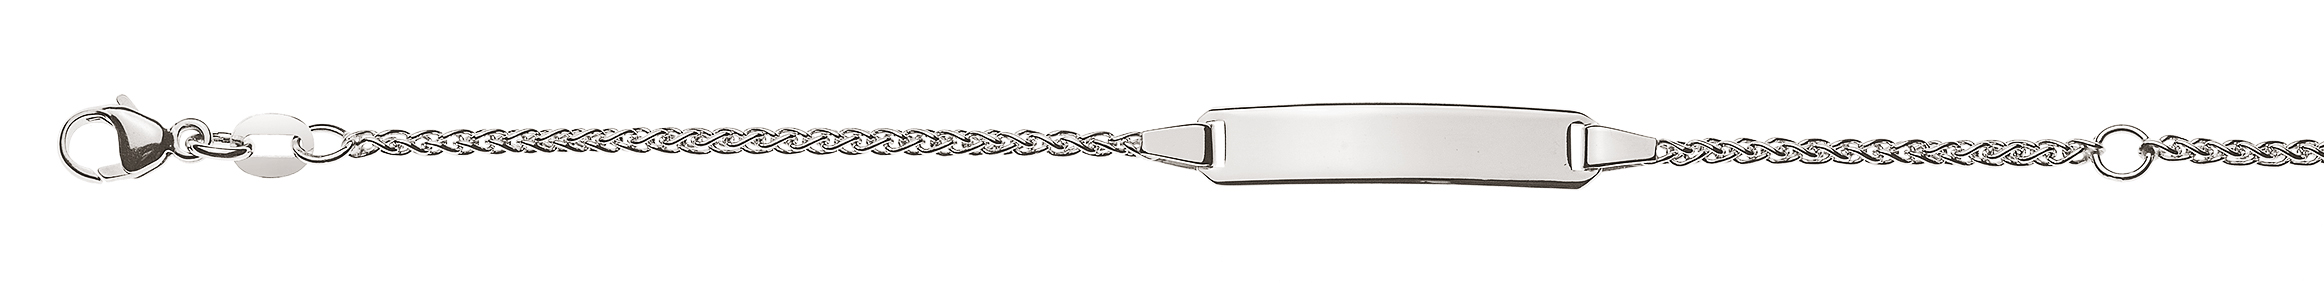 AURONOS Élégance ID-Bracelet en or blanc 14k Chaîne de tresses 16cm